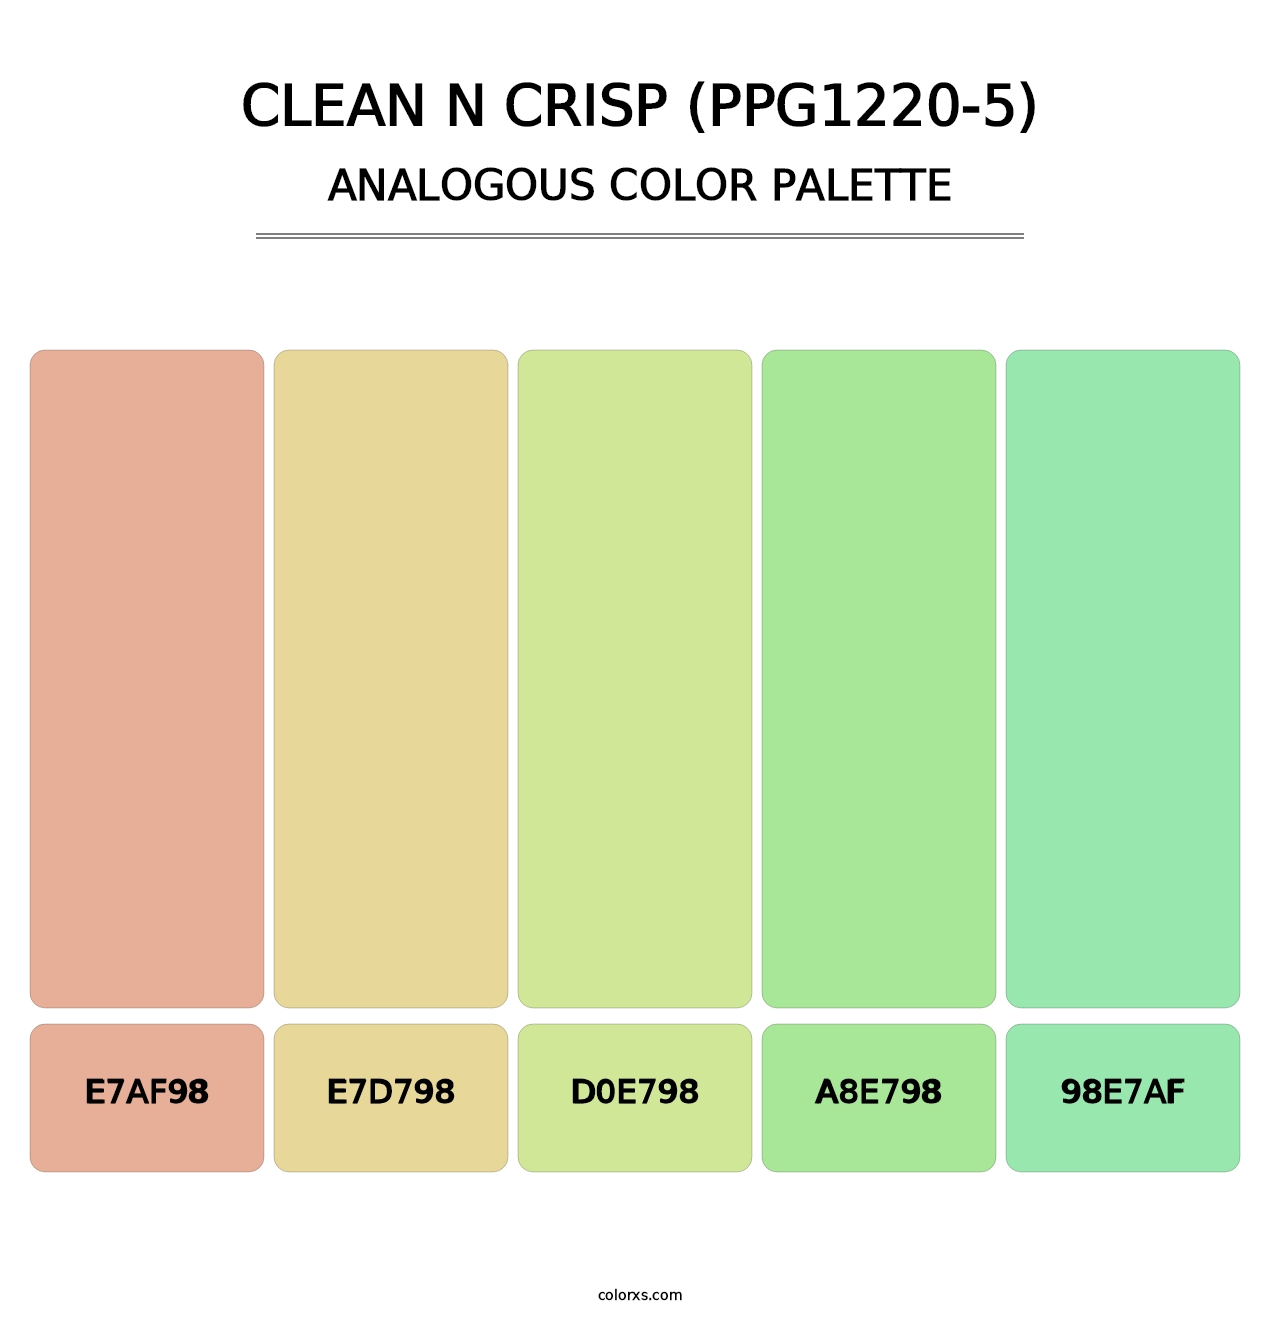 Clean N Crisp (PPG1220-5) - Analogous Color Palette